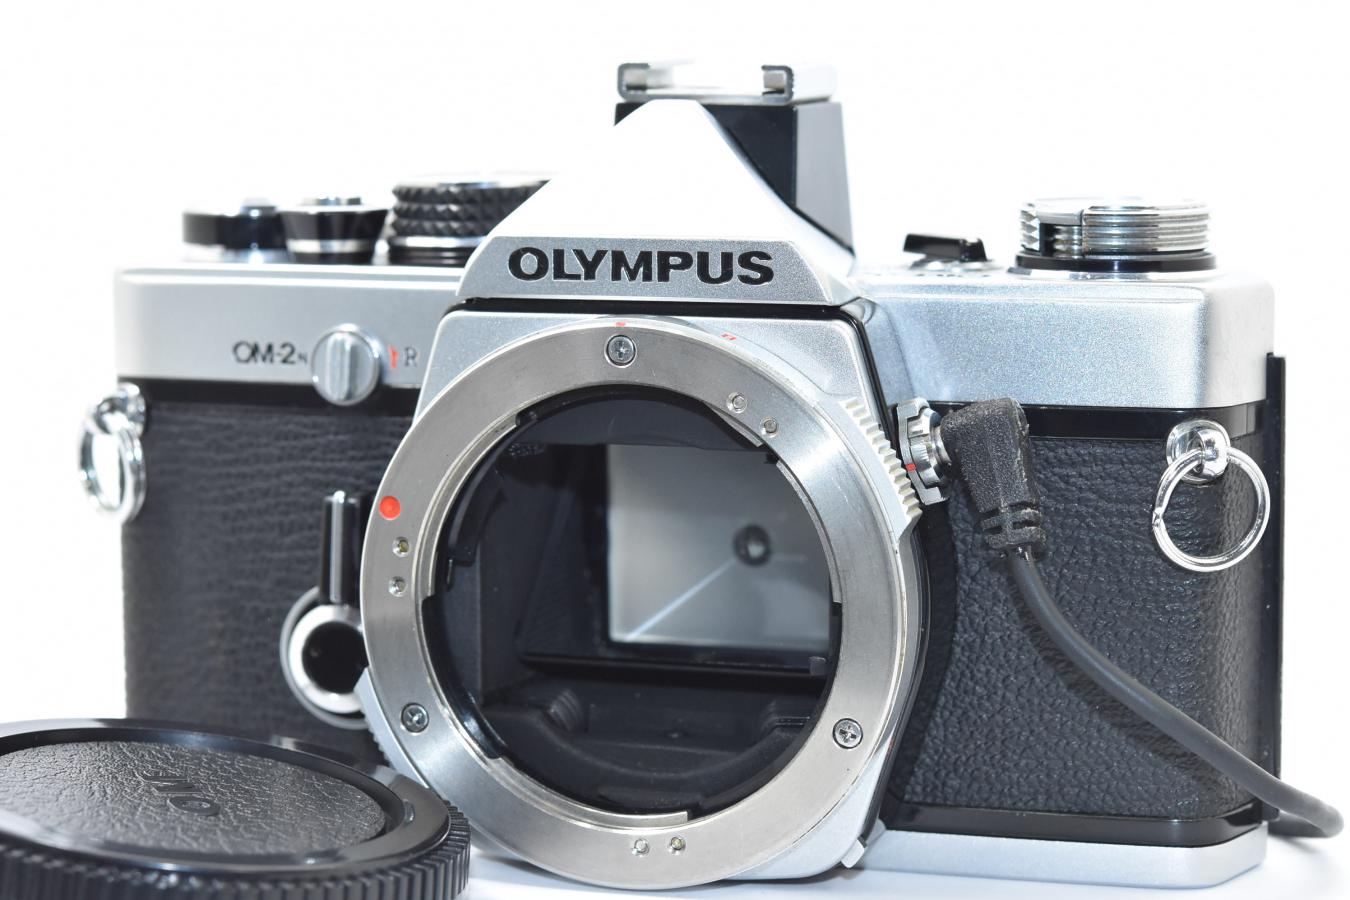 オリンパス Olympus Om 2n シルバー 整備済 データバック2 純正アクセサリーシュー4型付 カメラのヤマゲン カメラファン 中古カメラ レンズ検索サイト 欲しい中古カメラが見つかる